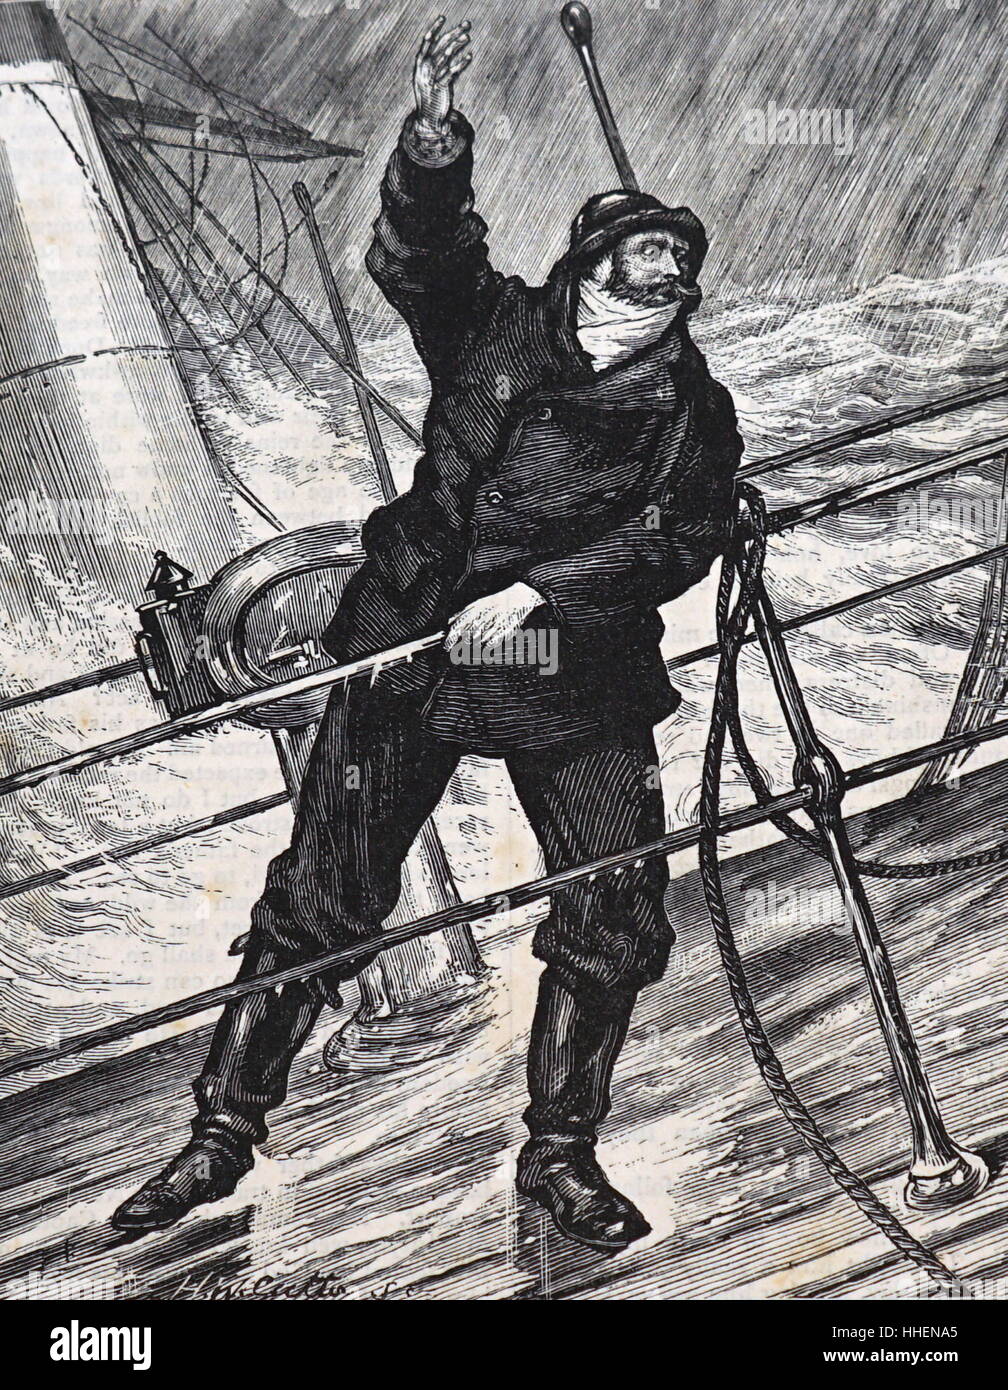 Illustration intitulée 'Abaisser l'embarcation' représentant un homme criant au cours d'une tempête fait rage. En date du 19e siècle Banque D'Images